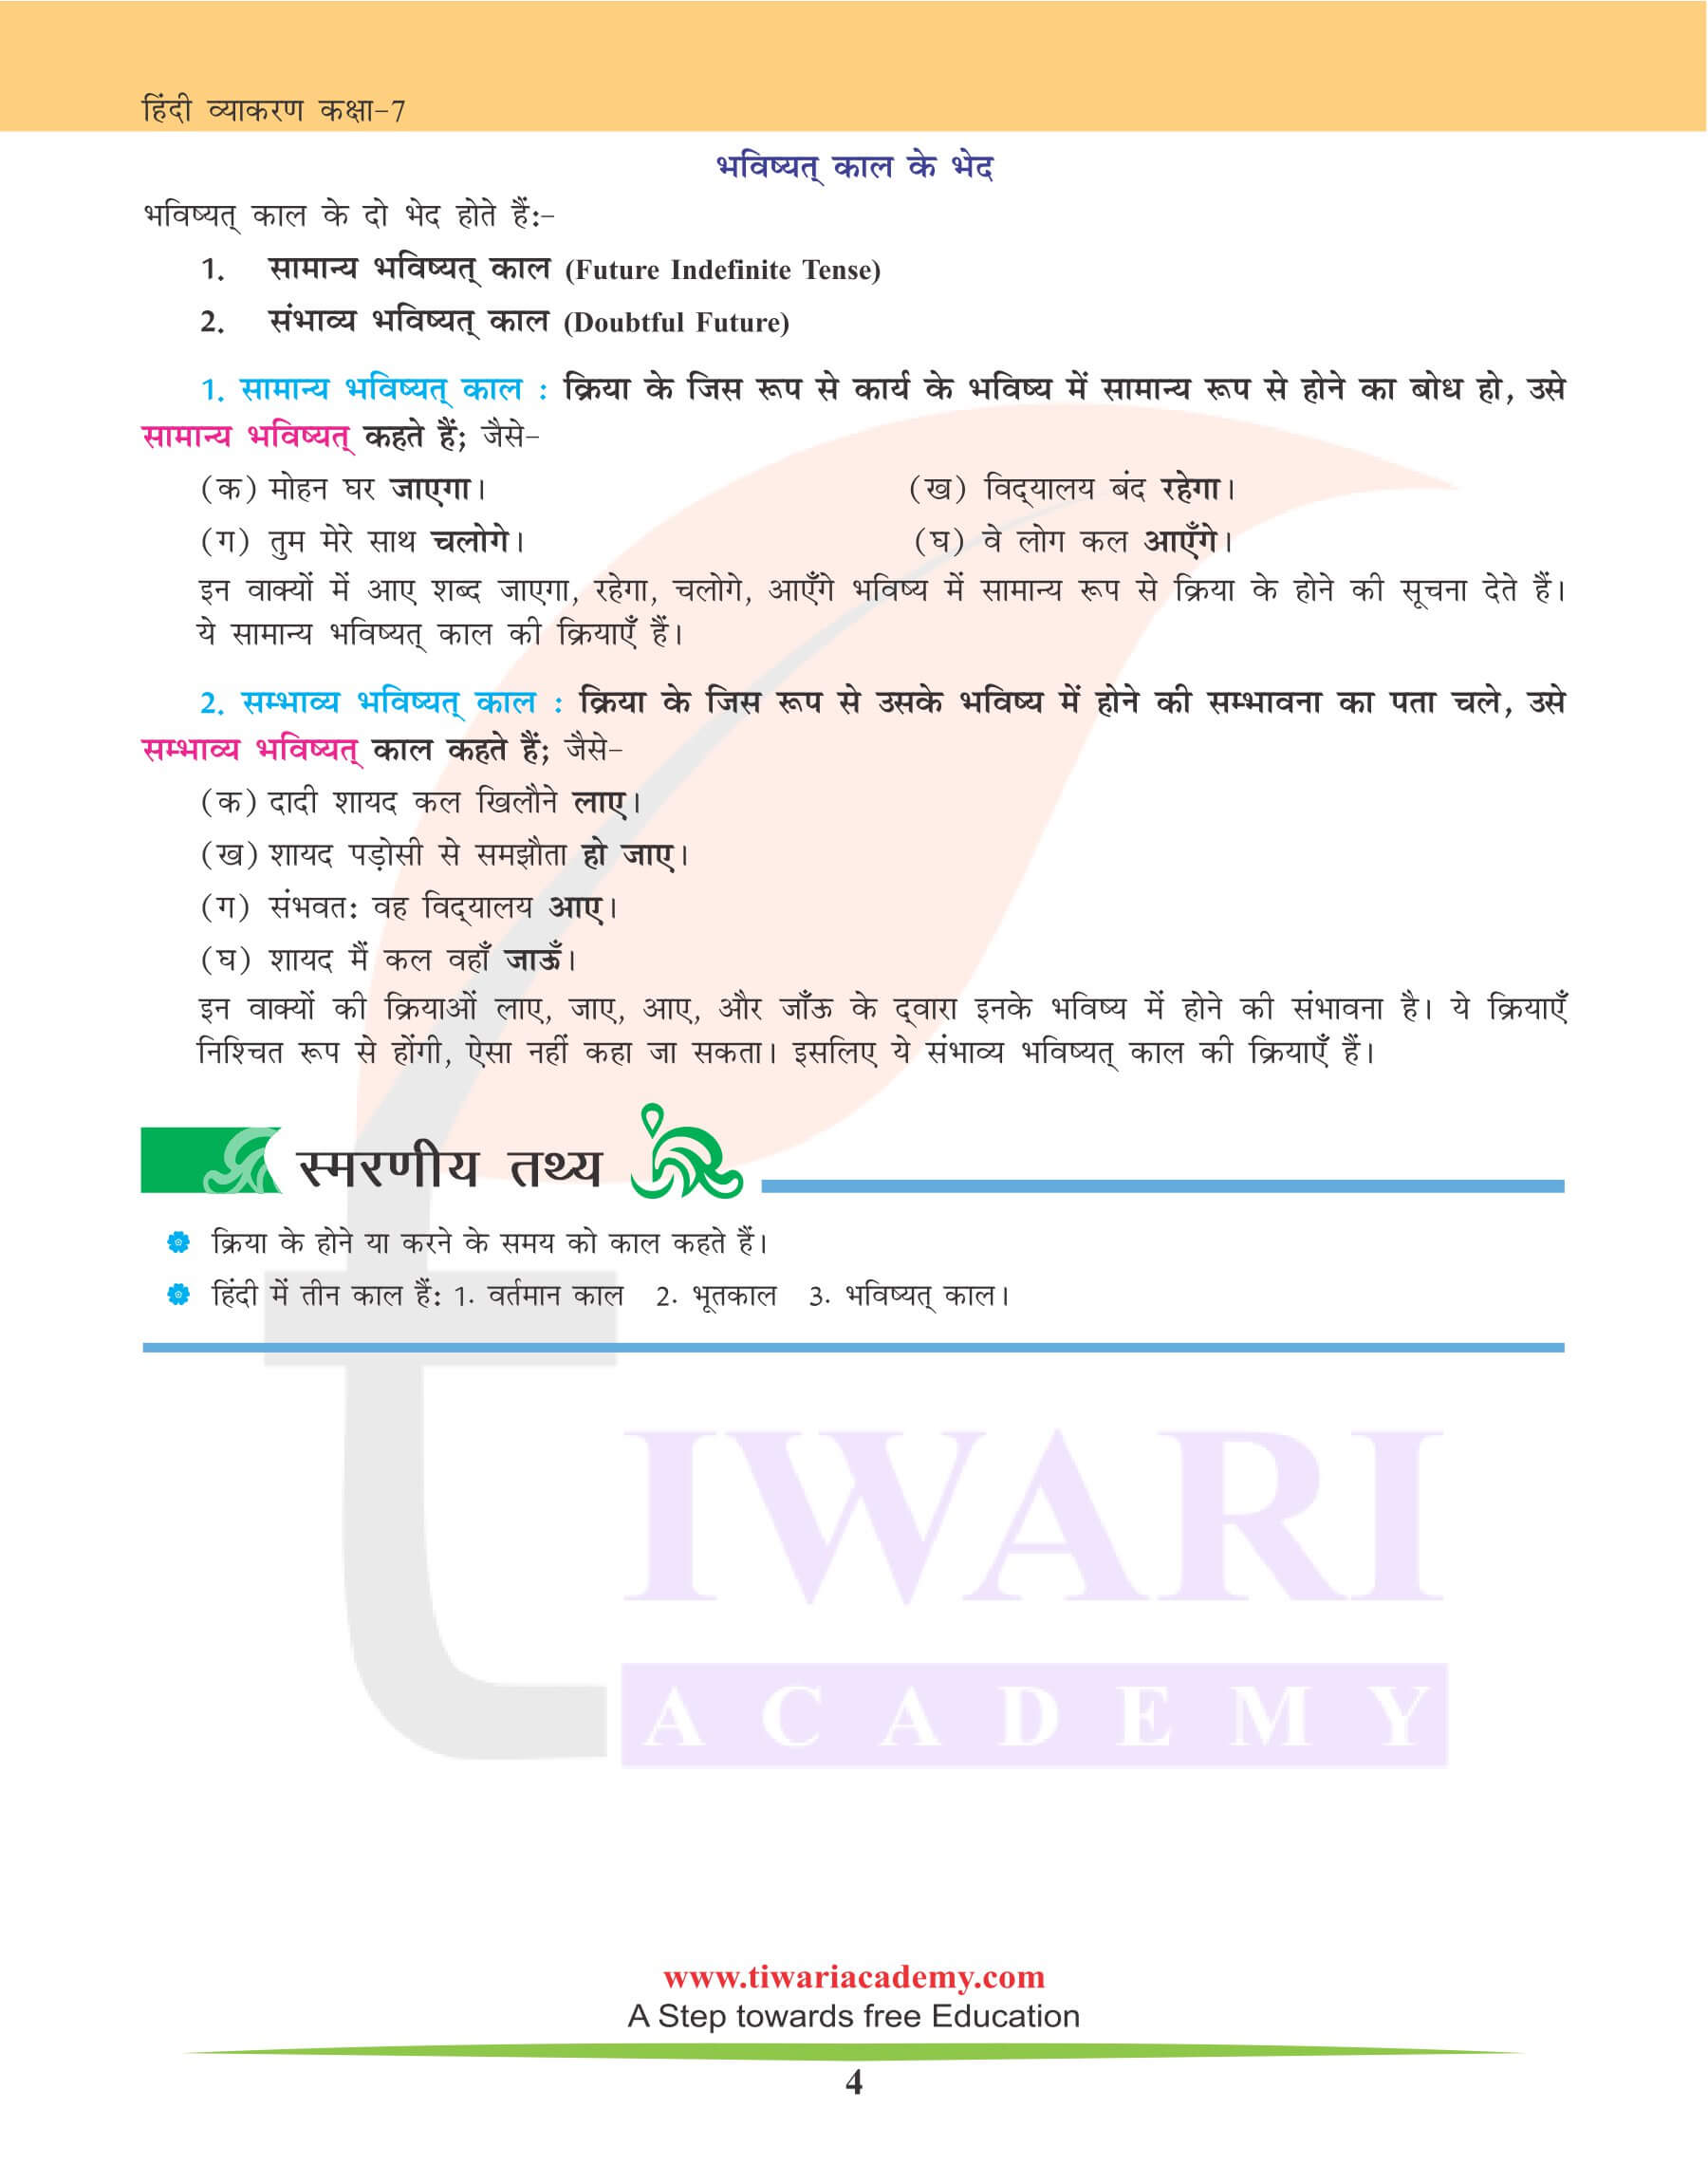 कक्षा 7 हिंदी व्याकरण में काल